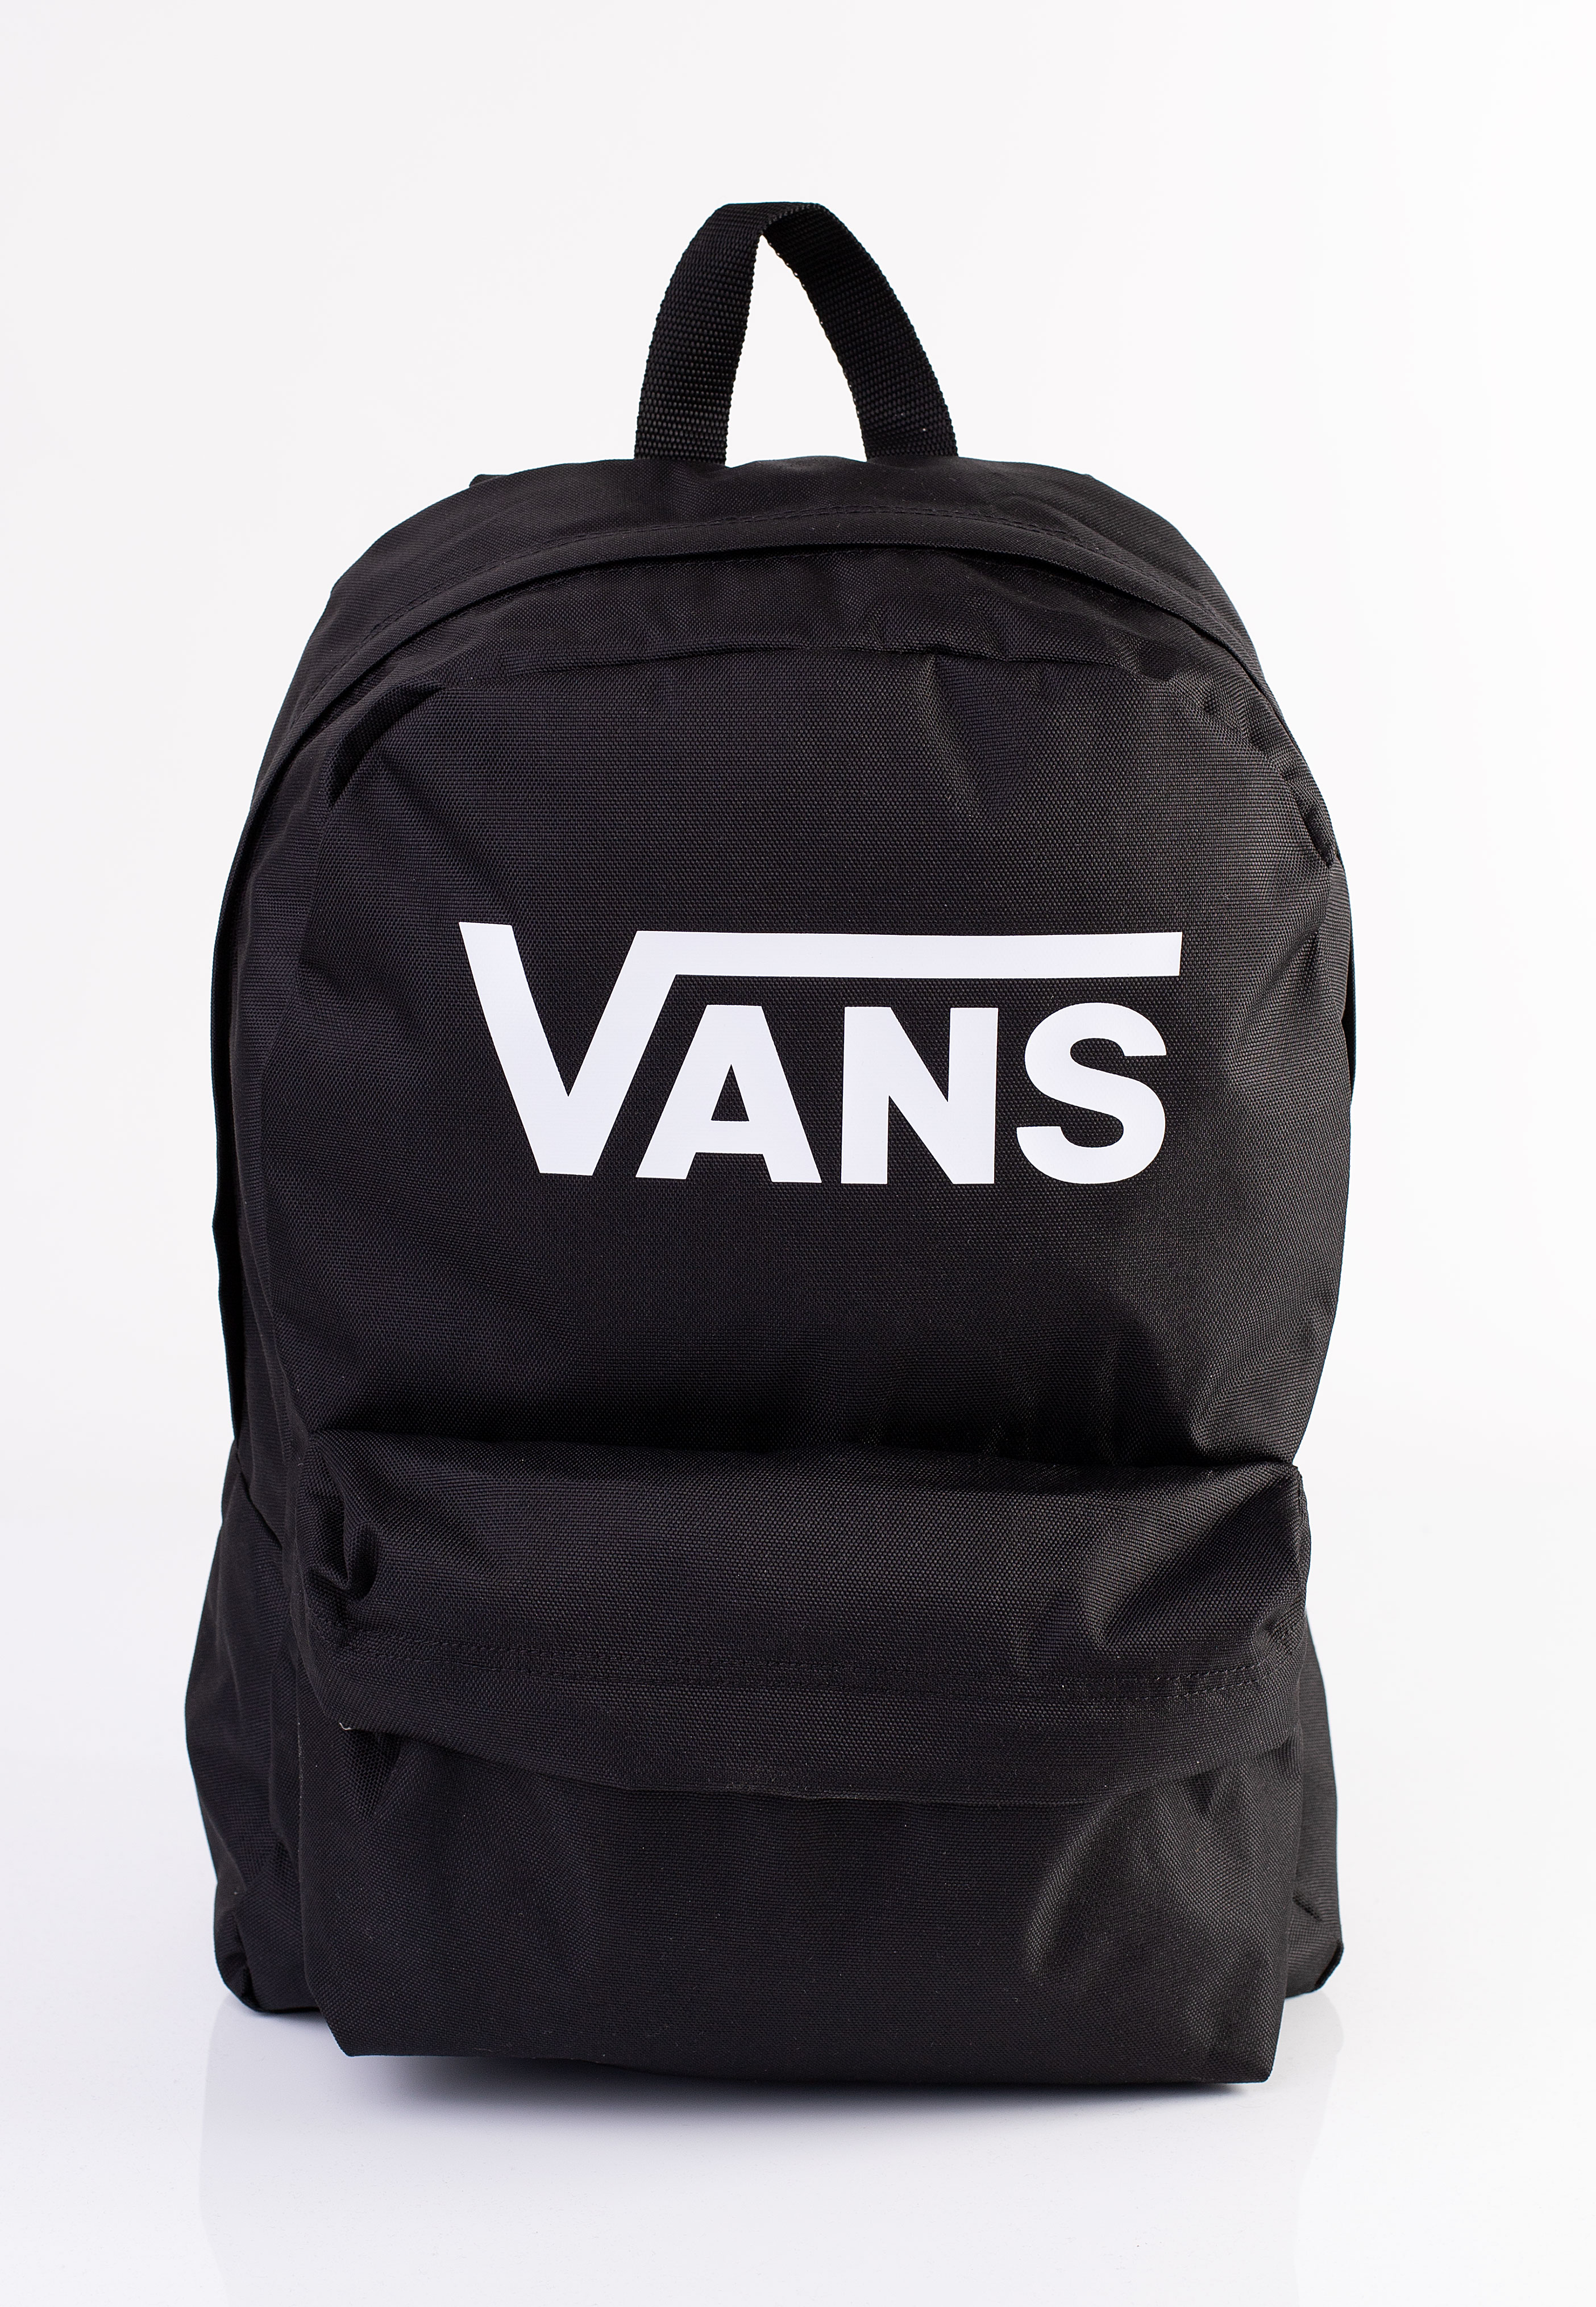 Vans - Old Skool Print Black - Backpack